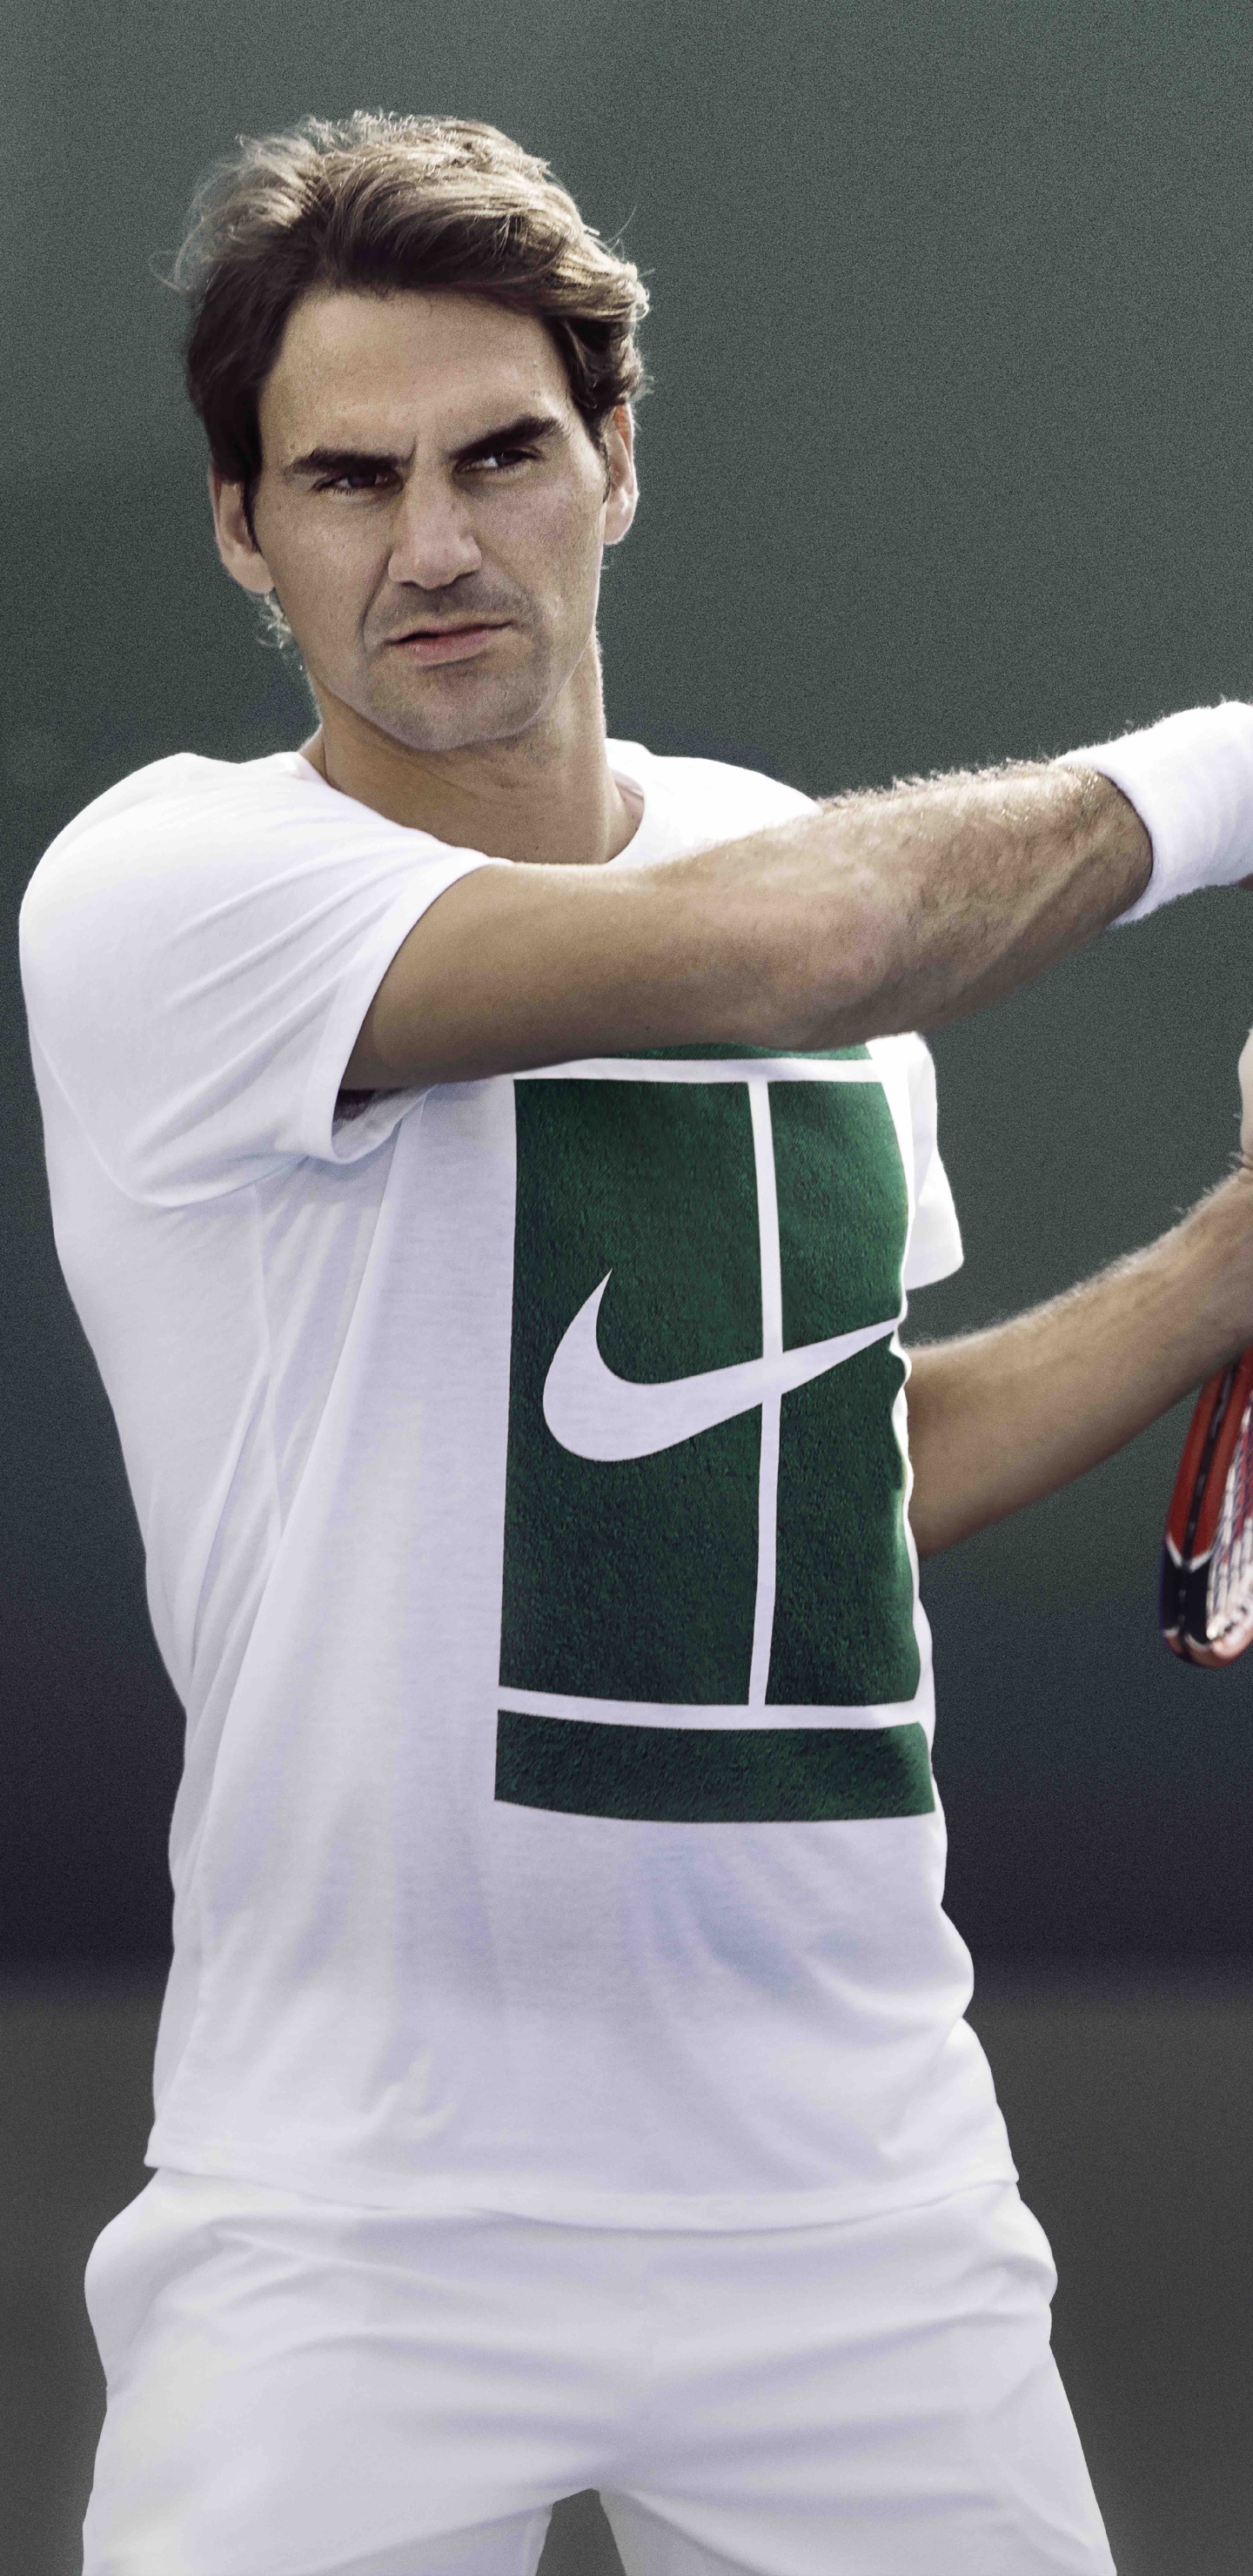 Hombre en Camiseta de Jersey Nike Verde y Blanco Con Raqueta de Tenis Roja y Blanca. Wallpaper in 1440x2960 Resolution